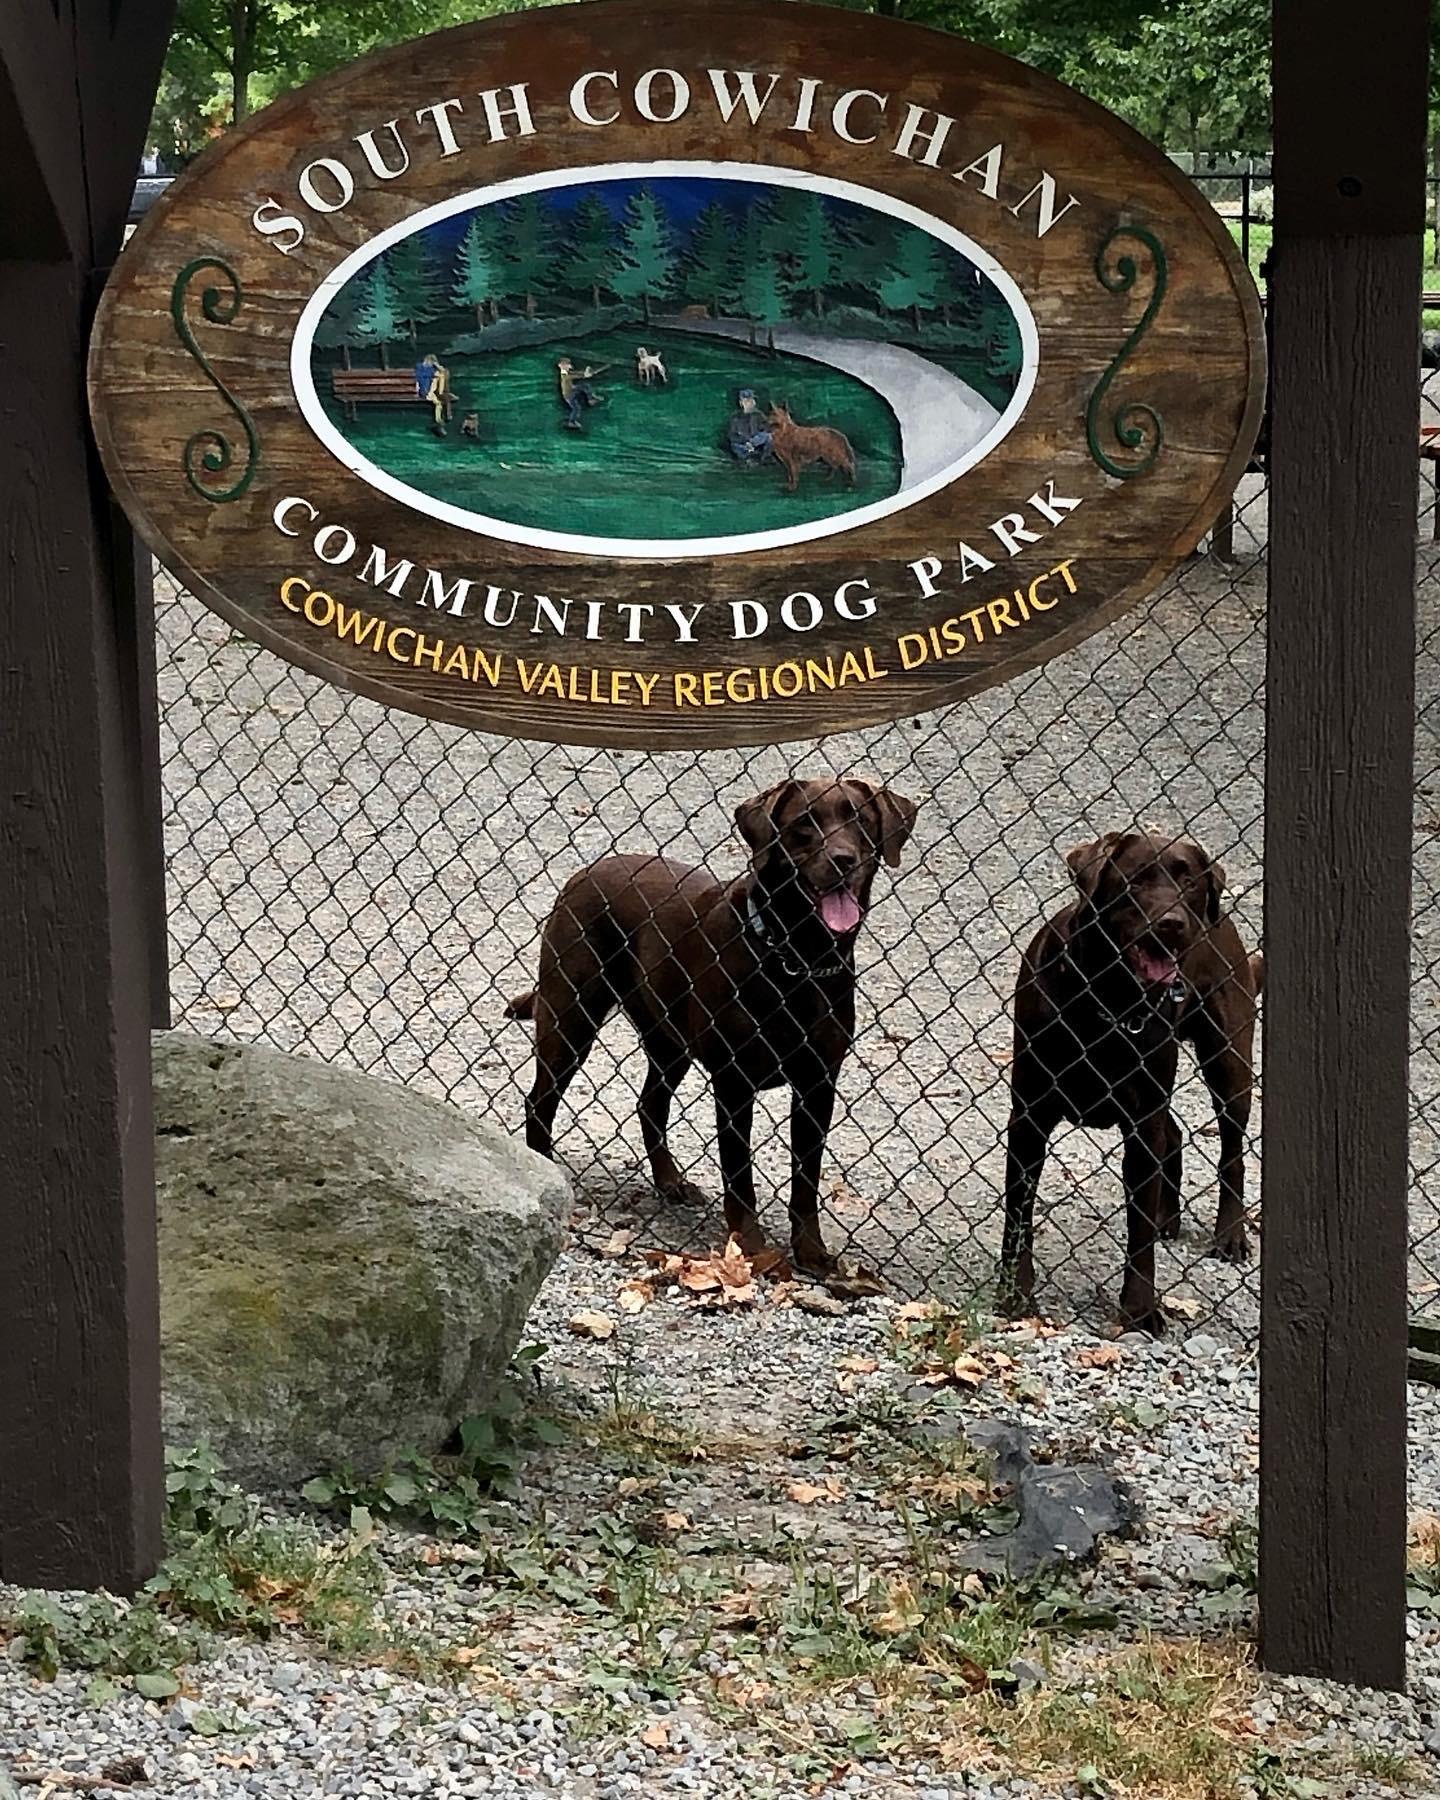 Pet Friendly South Cowichan Community Off-Leash Dog Park